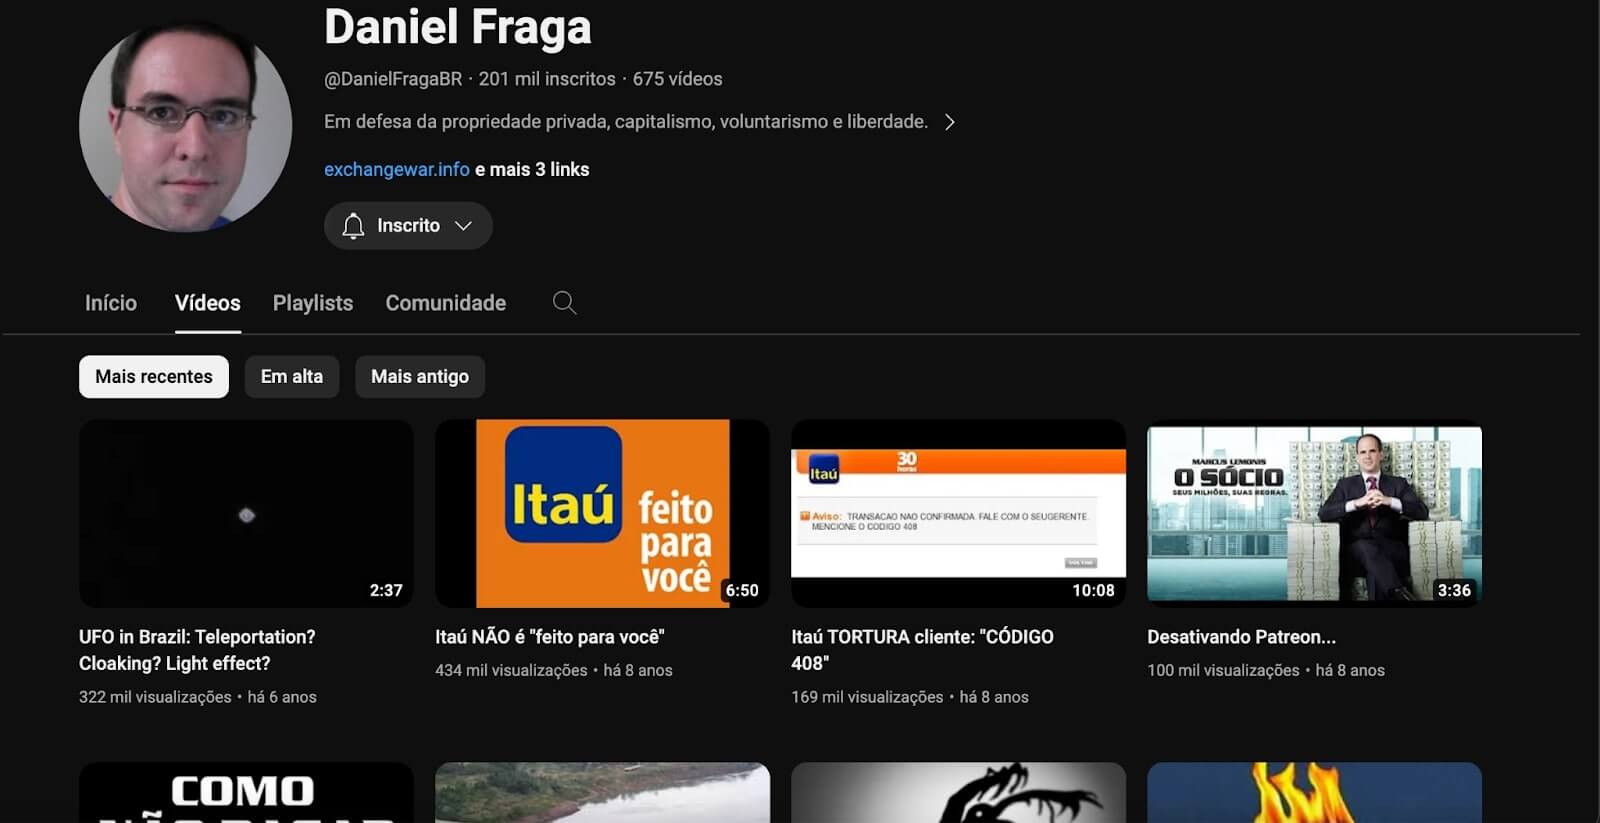 Canal do Daniel Fraga no Youtube